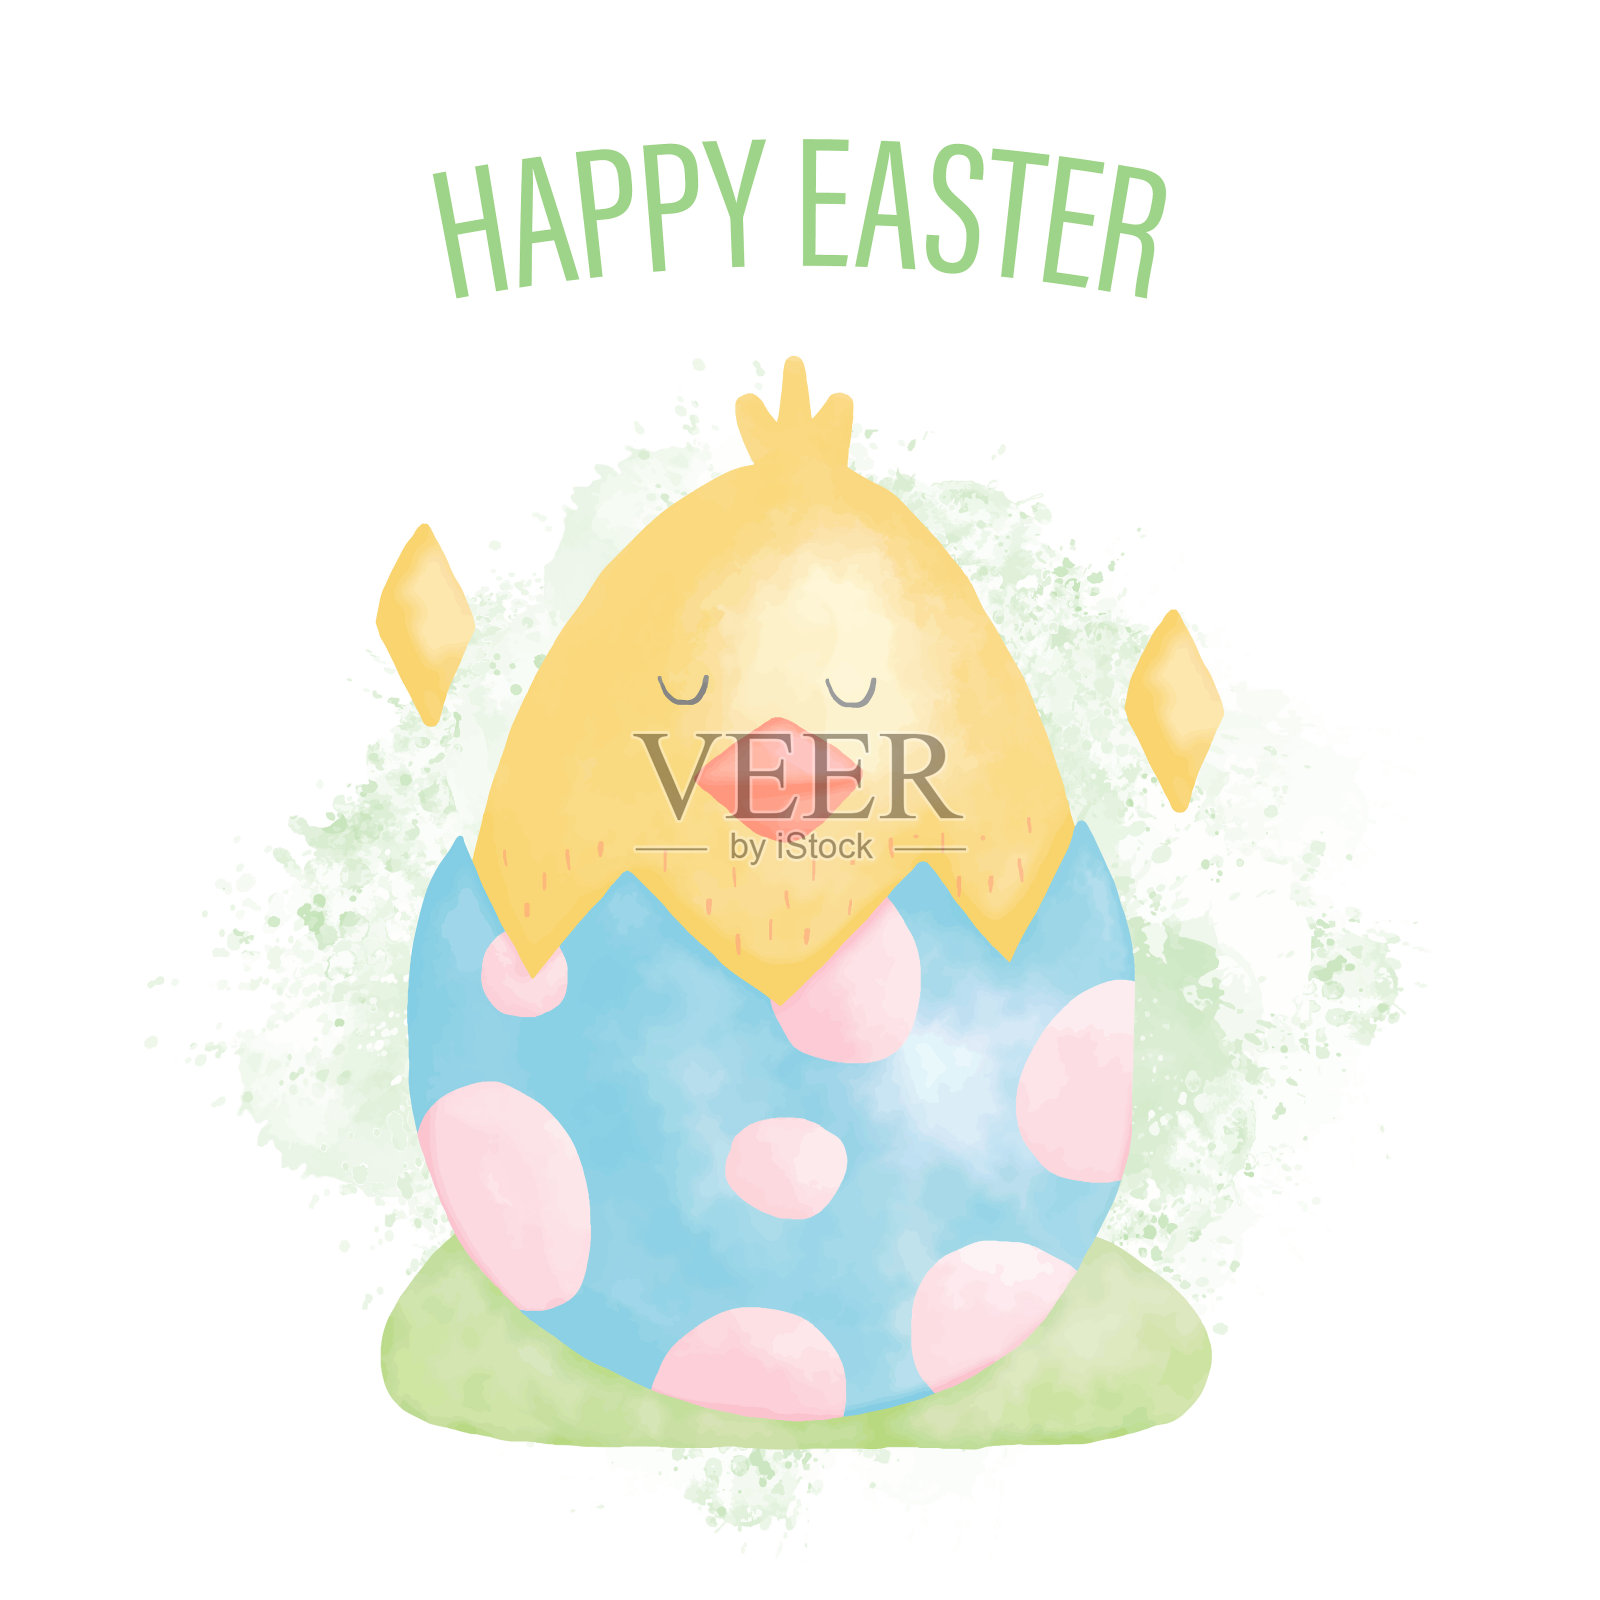 水彩画复活节快乐鸡和复活节蛋插画图片素材